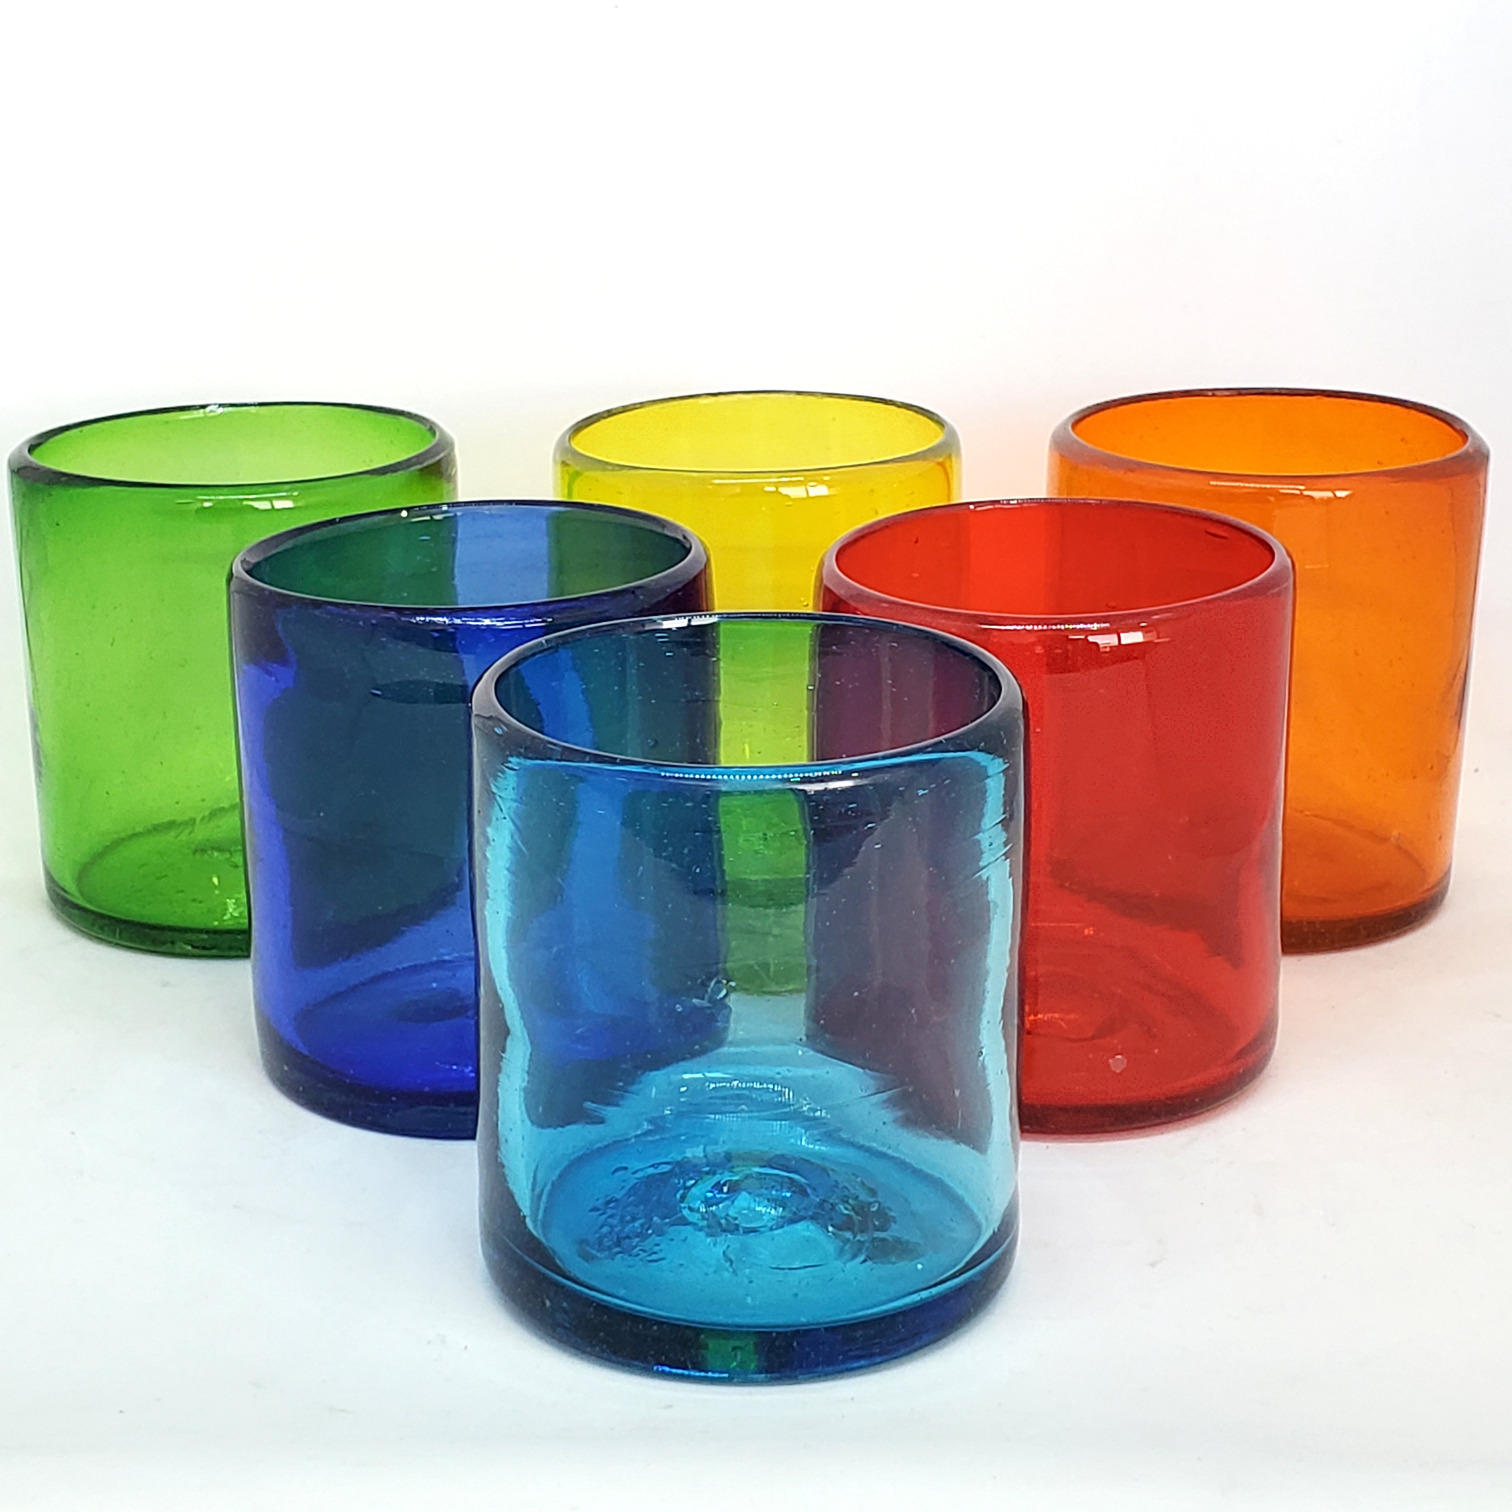 Novedades / Vasos chicos 9 oz Arcoiris (set de 6) / Éstos artesanales vasos le darán un toque colorido a su bebida favorita.